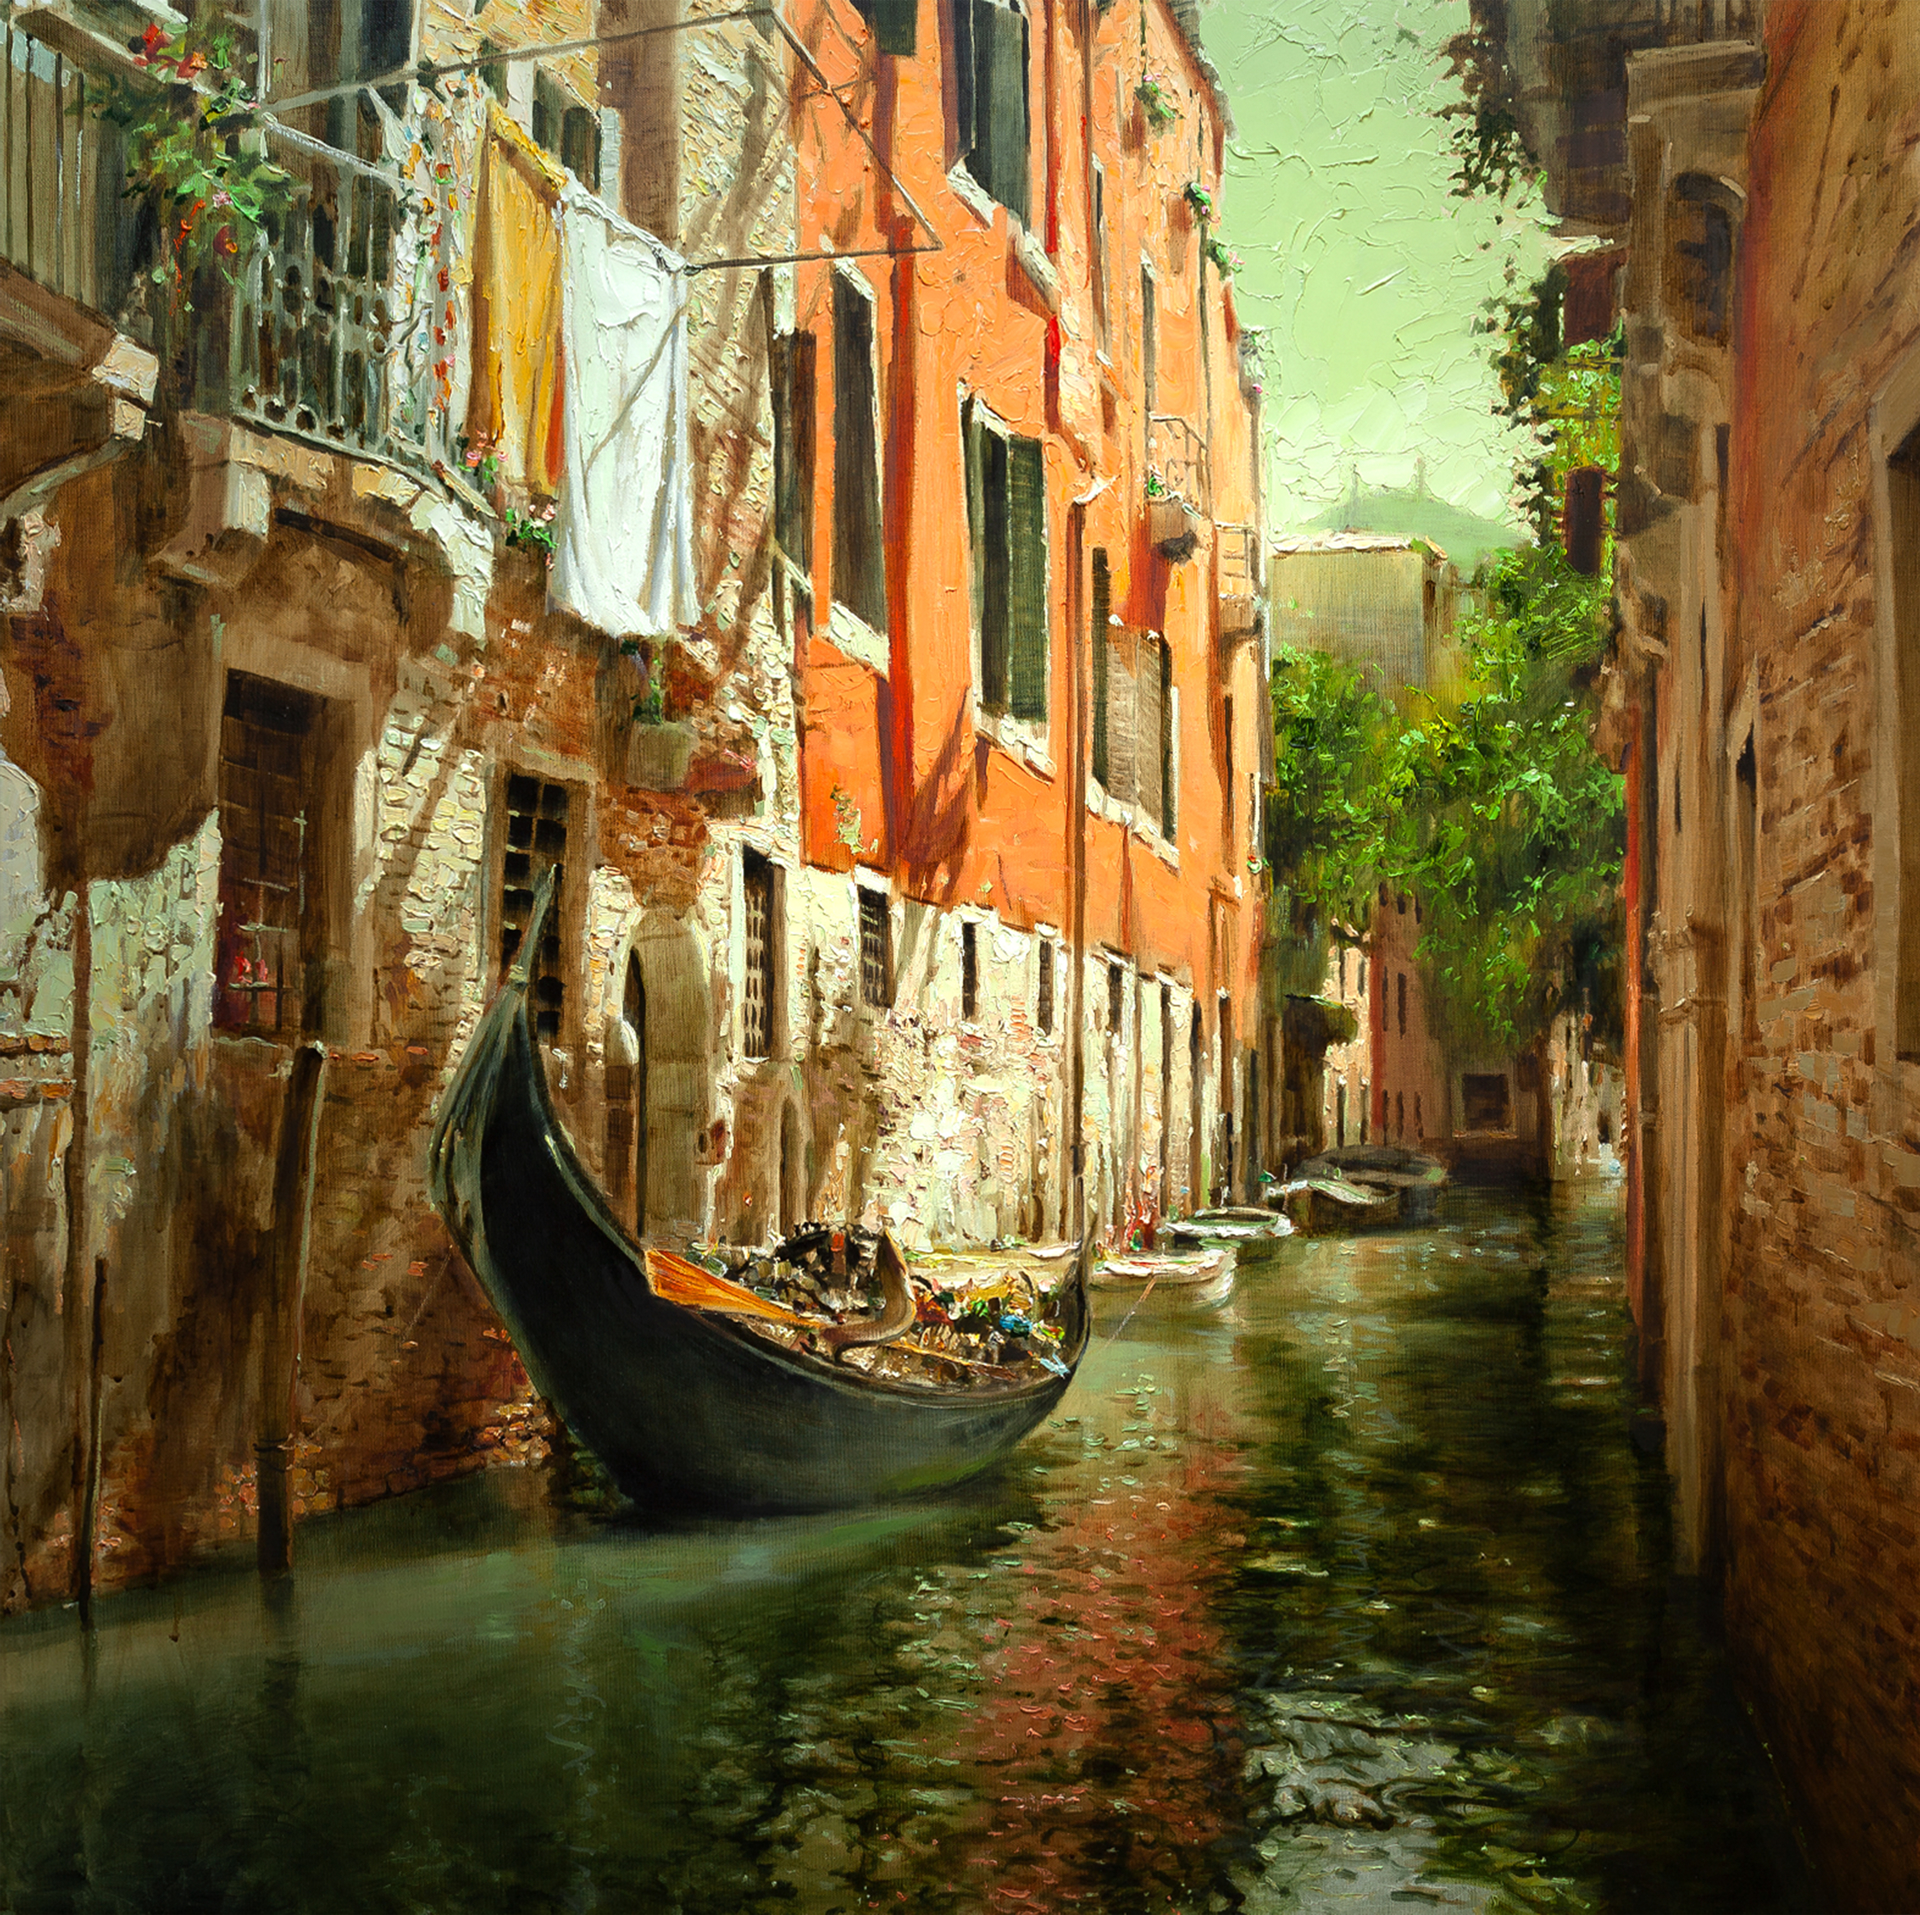 "Venetian Street" by Oleg Trofimov